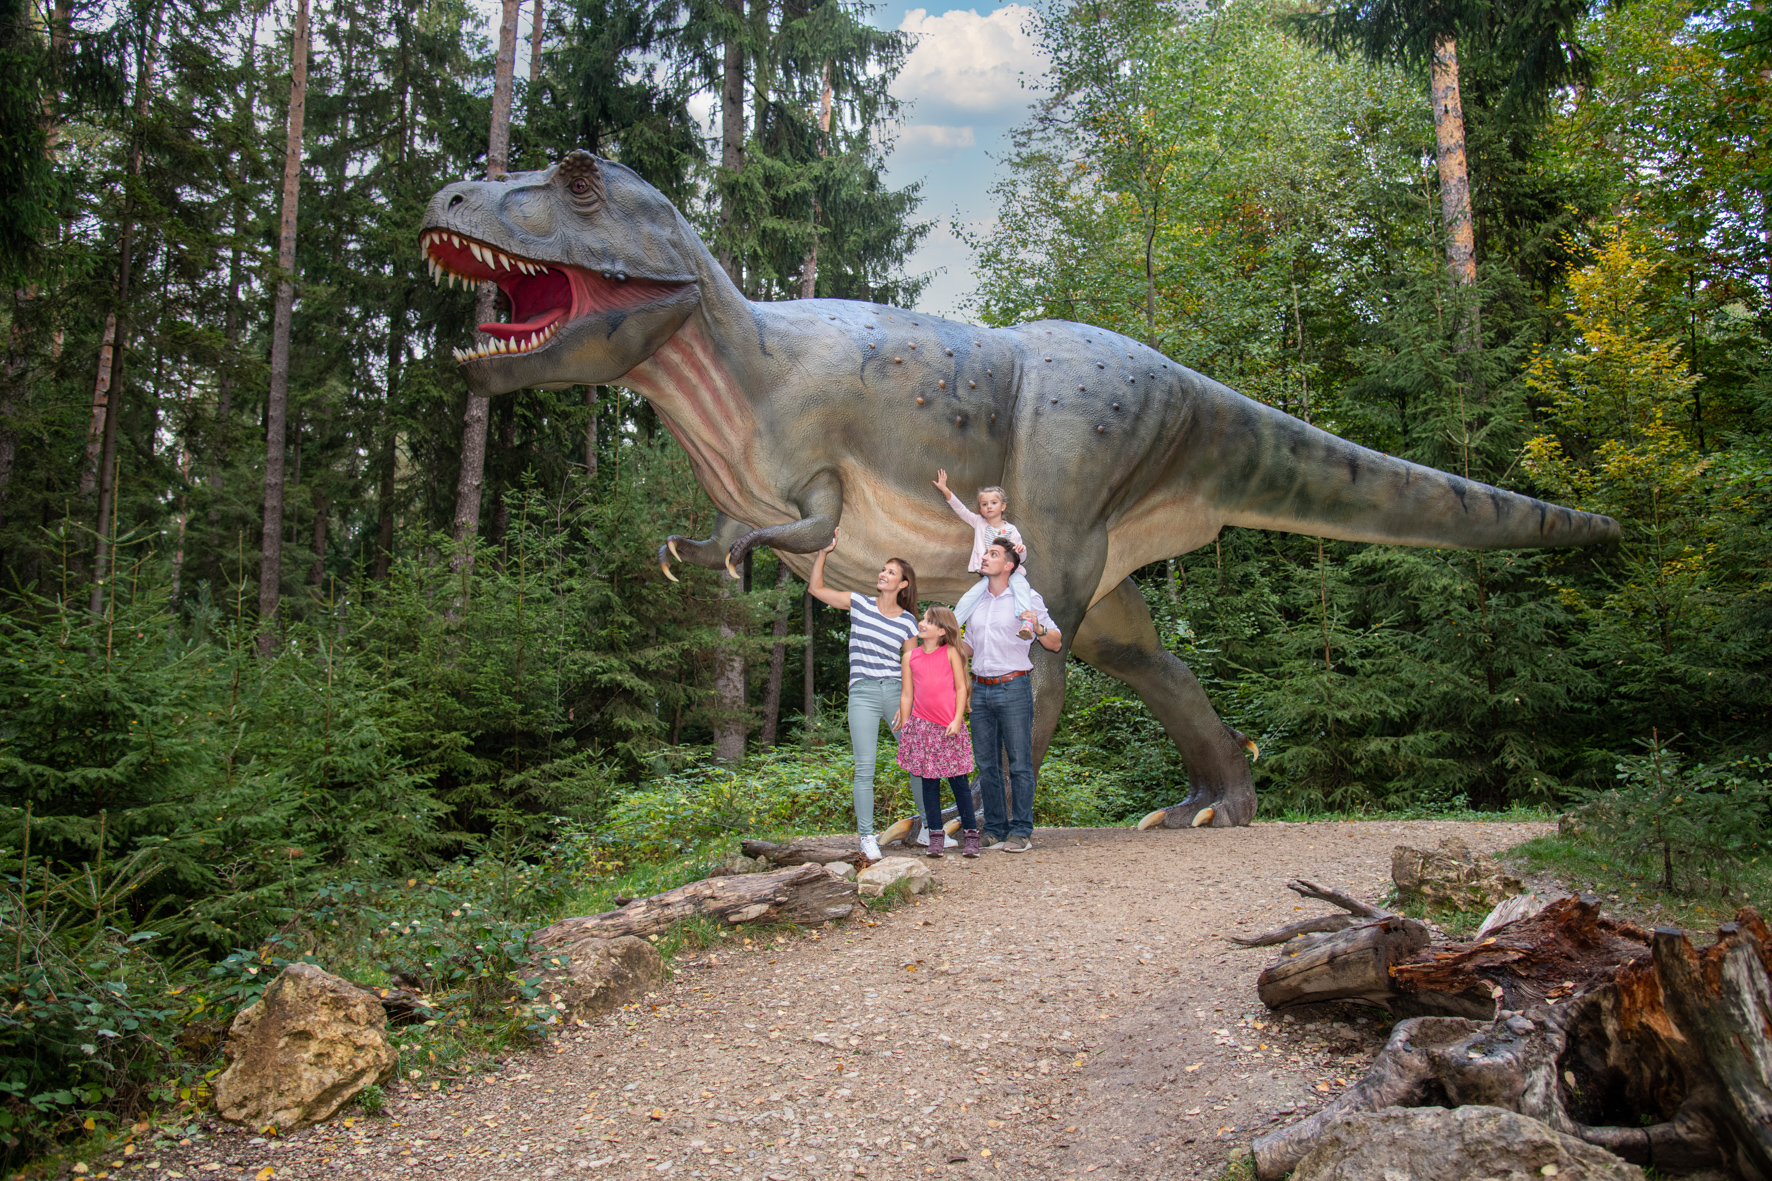 Familien-Jahreskarte für das Dinosaurier Museum Altmühltal